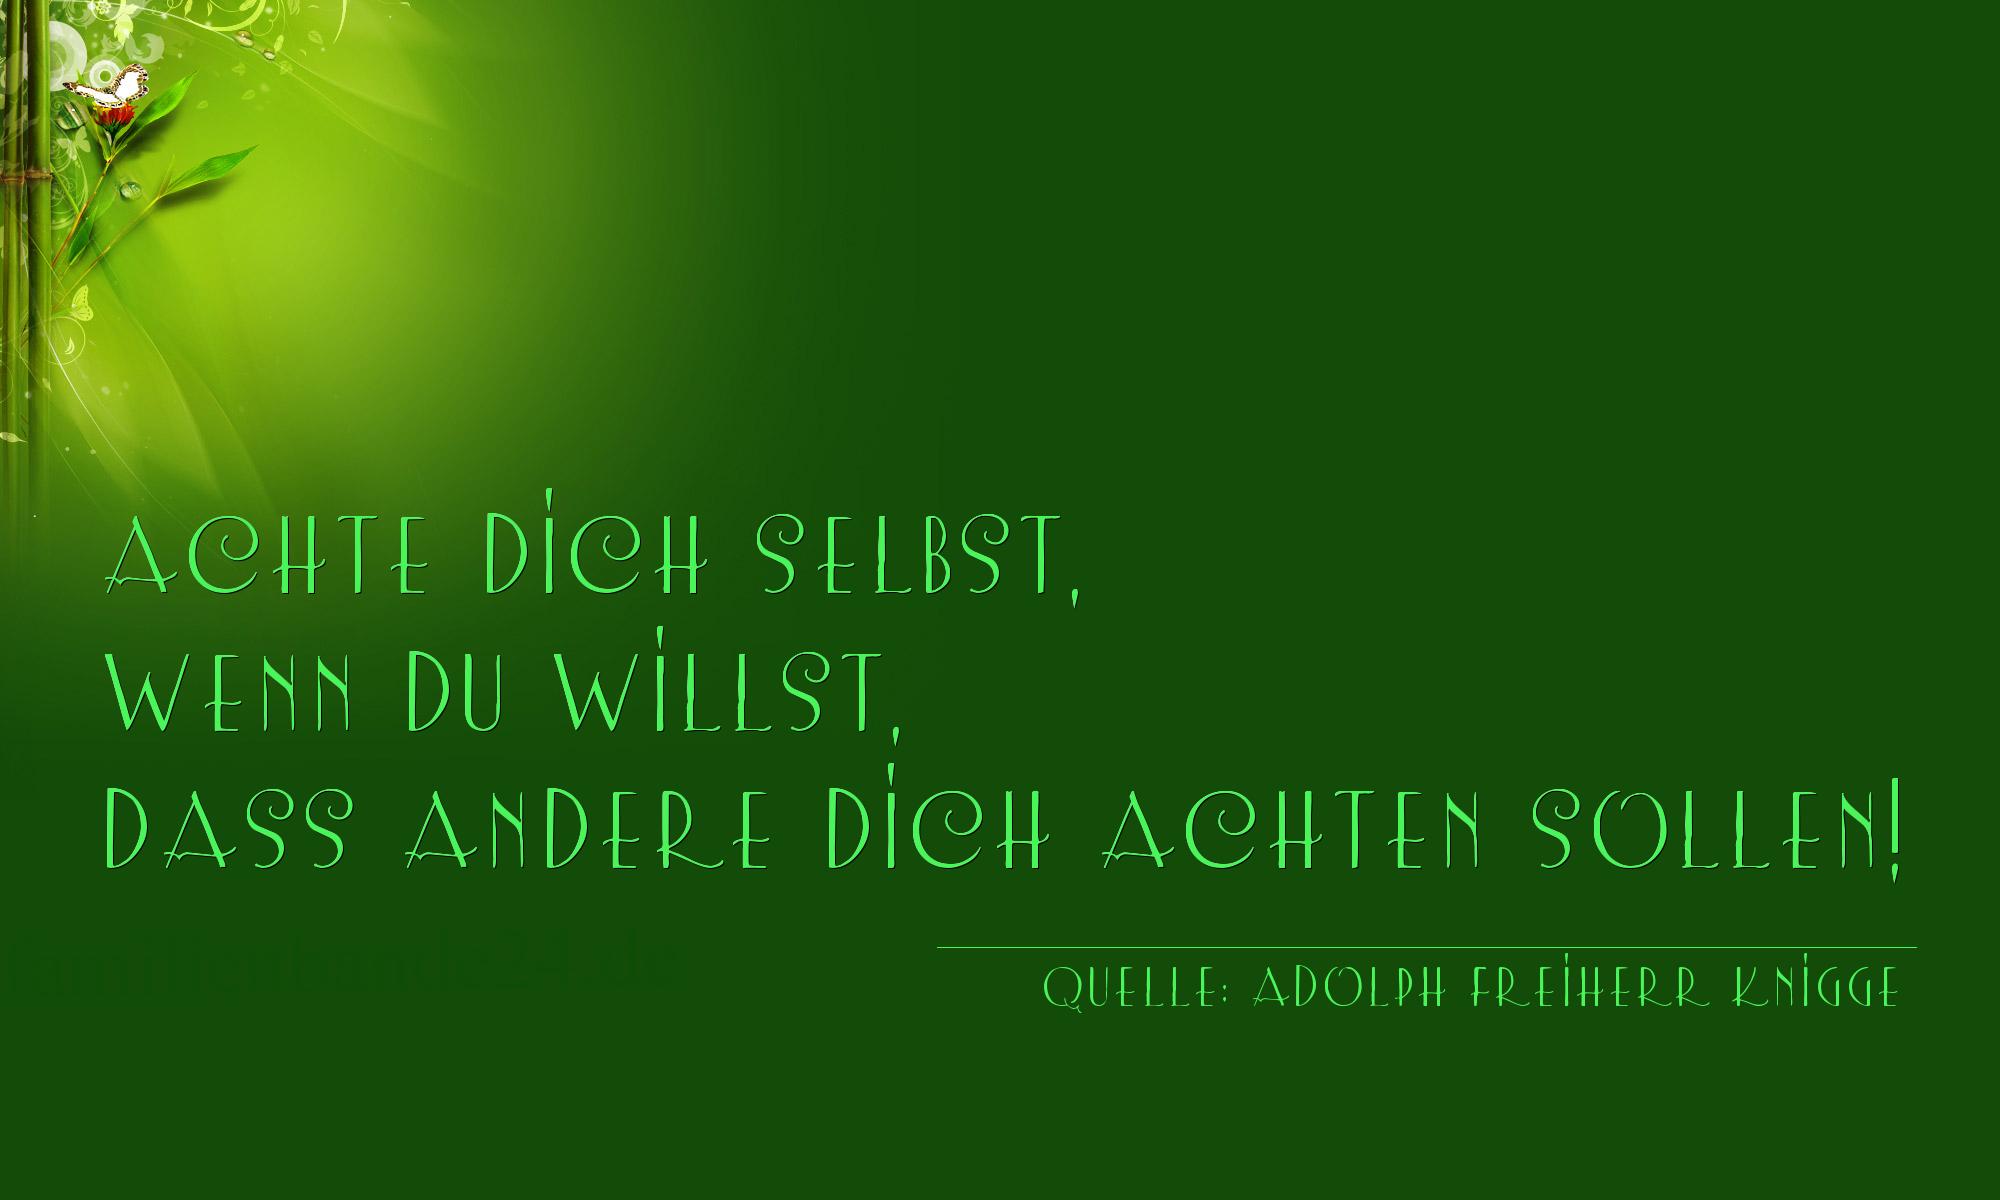 Aphorismus Nummer 1186 (von Adolph Freiherr Knigge): "Achte dich selbst, wenn du willst, dass andere dich achte [...]